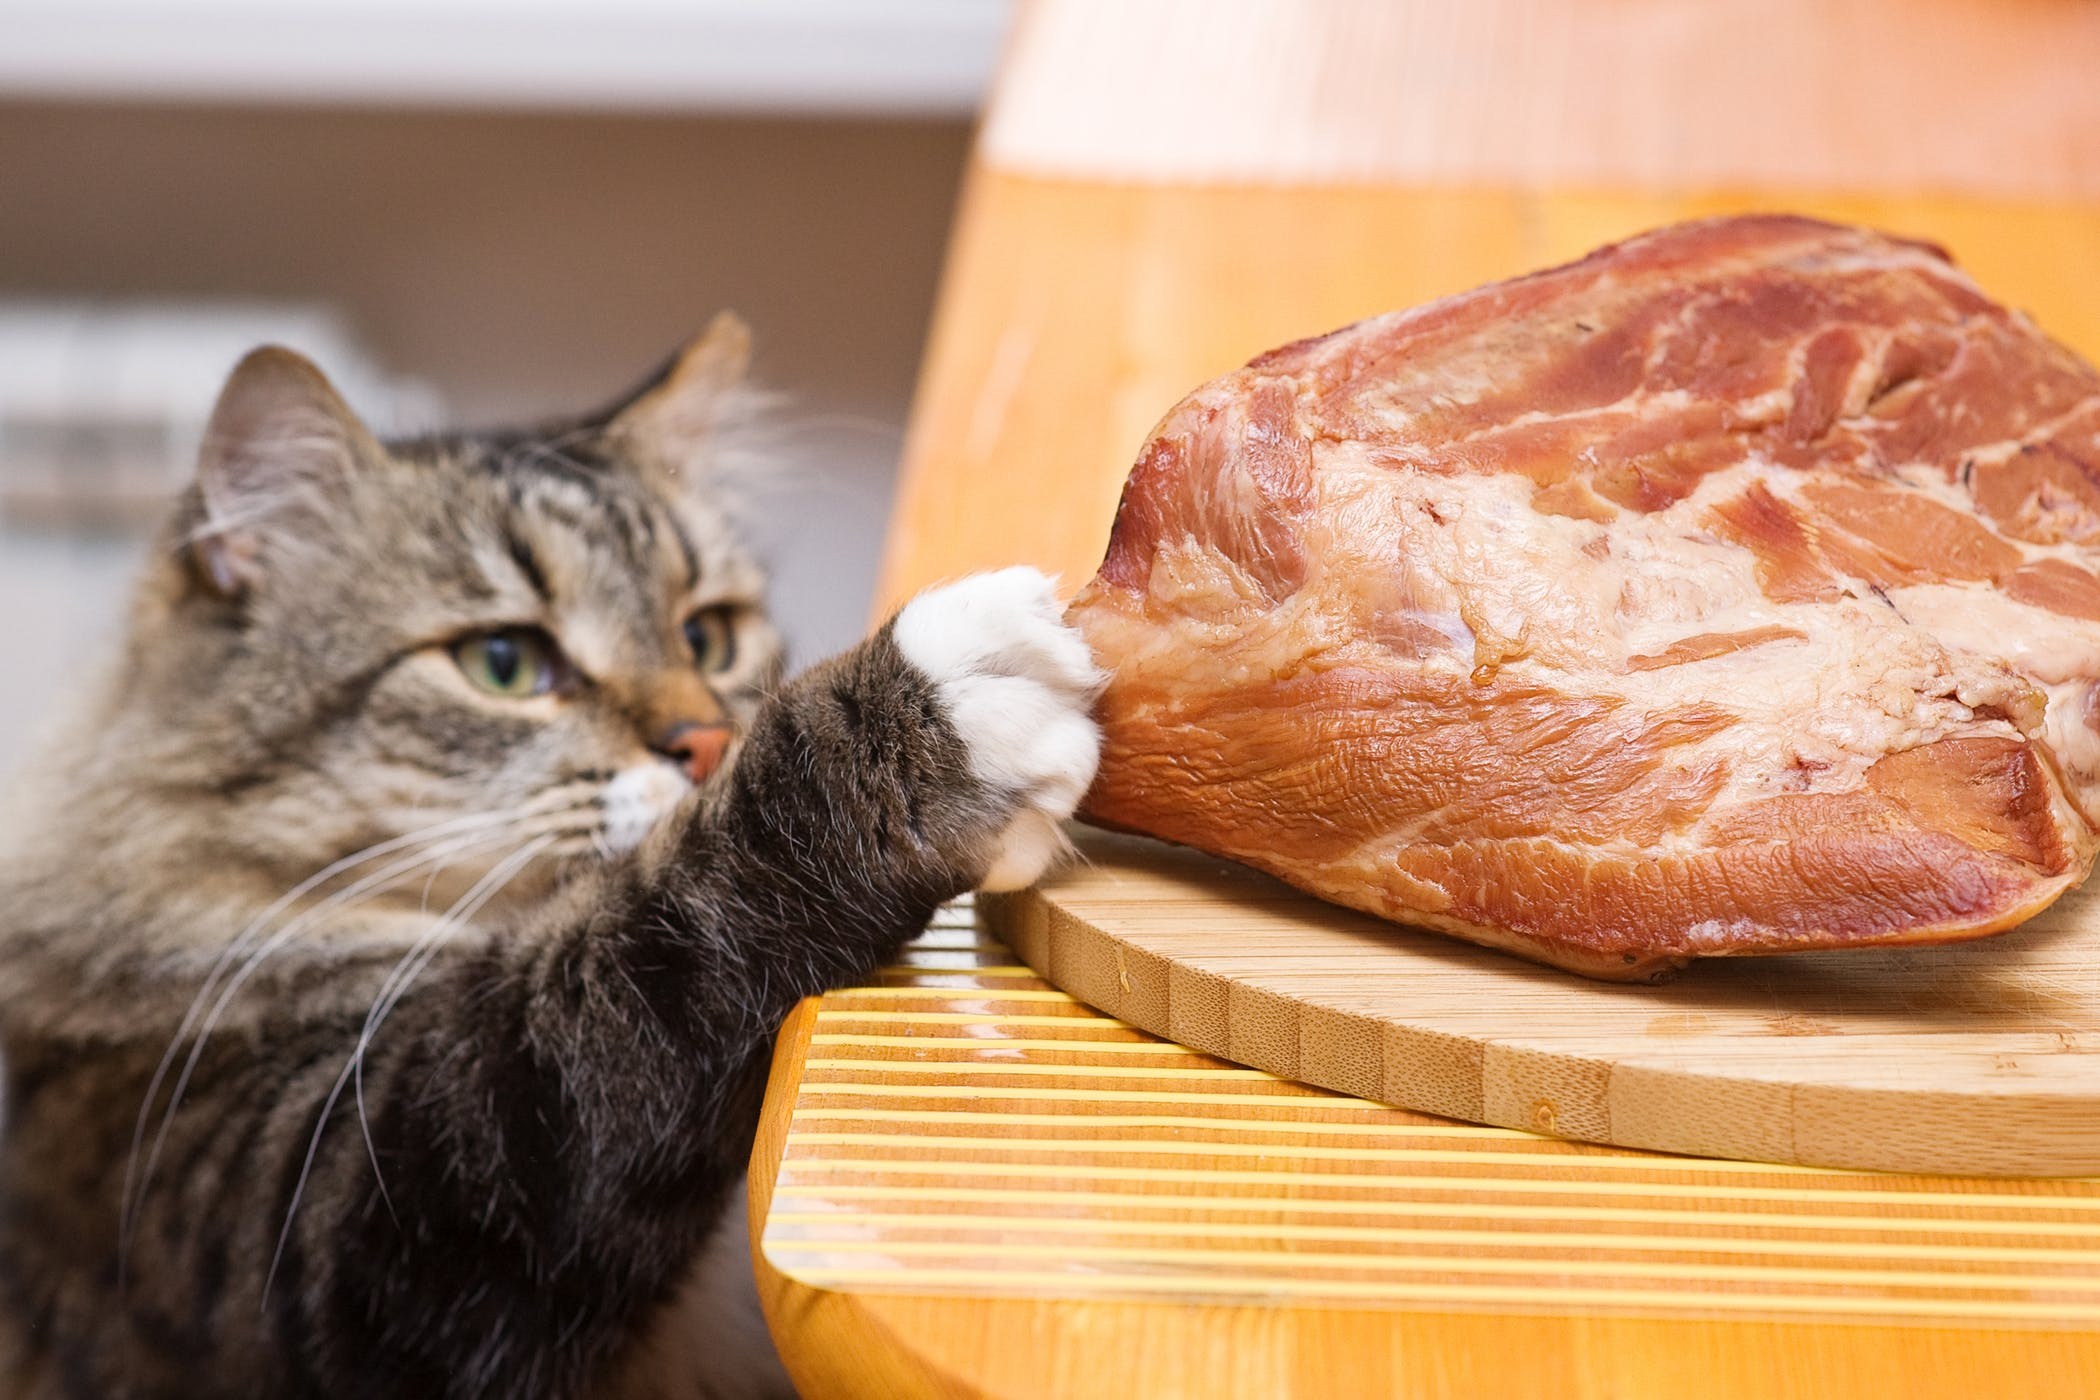 Знает кошка чье мясо съела